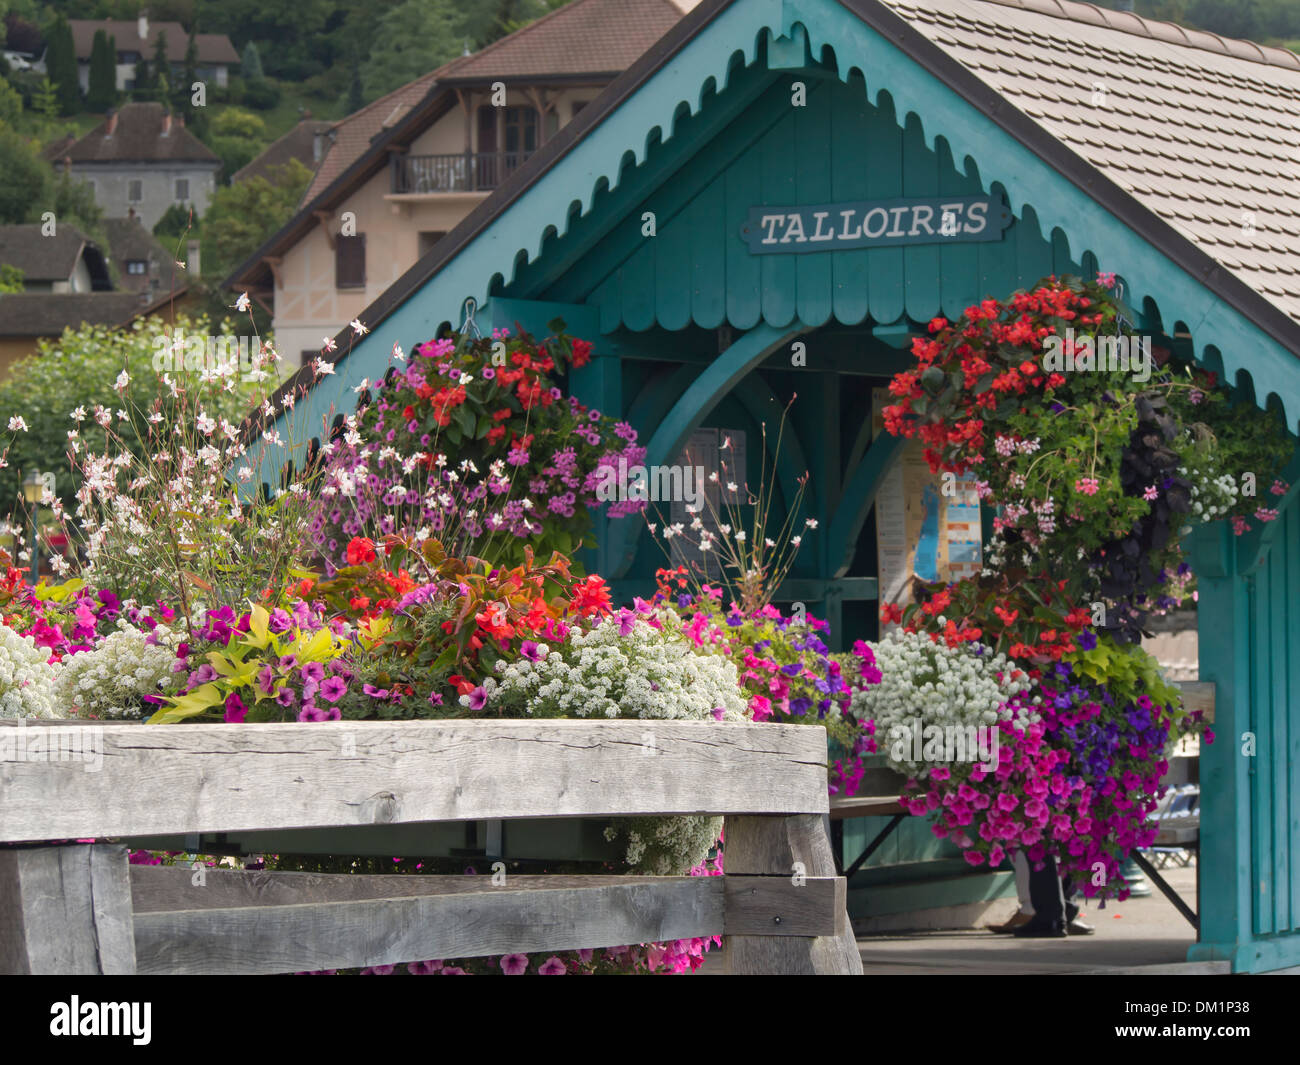 Die Schiffsanlegestelle in Talloires am Lac d ' Annecy in Frankreich, besuchte am Sightseeing-Touren von Annecy, Blume dekoriert pier Stockfoto